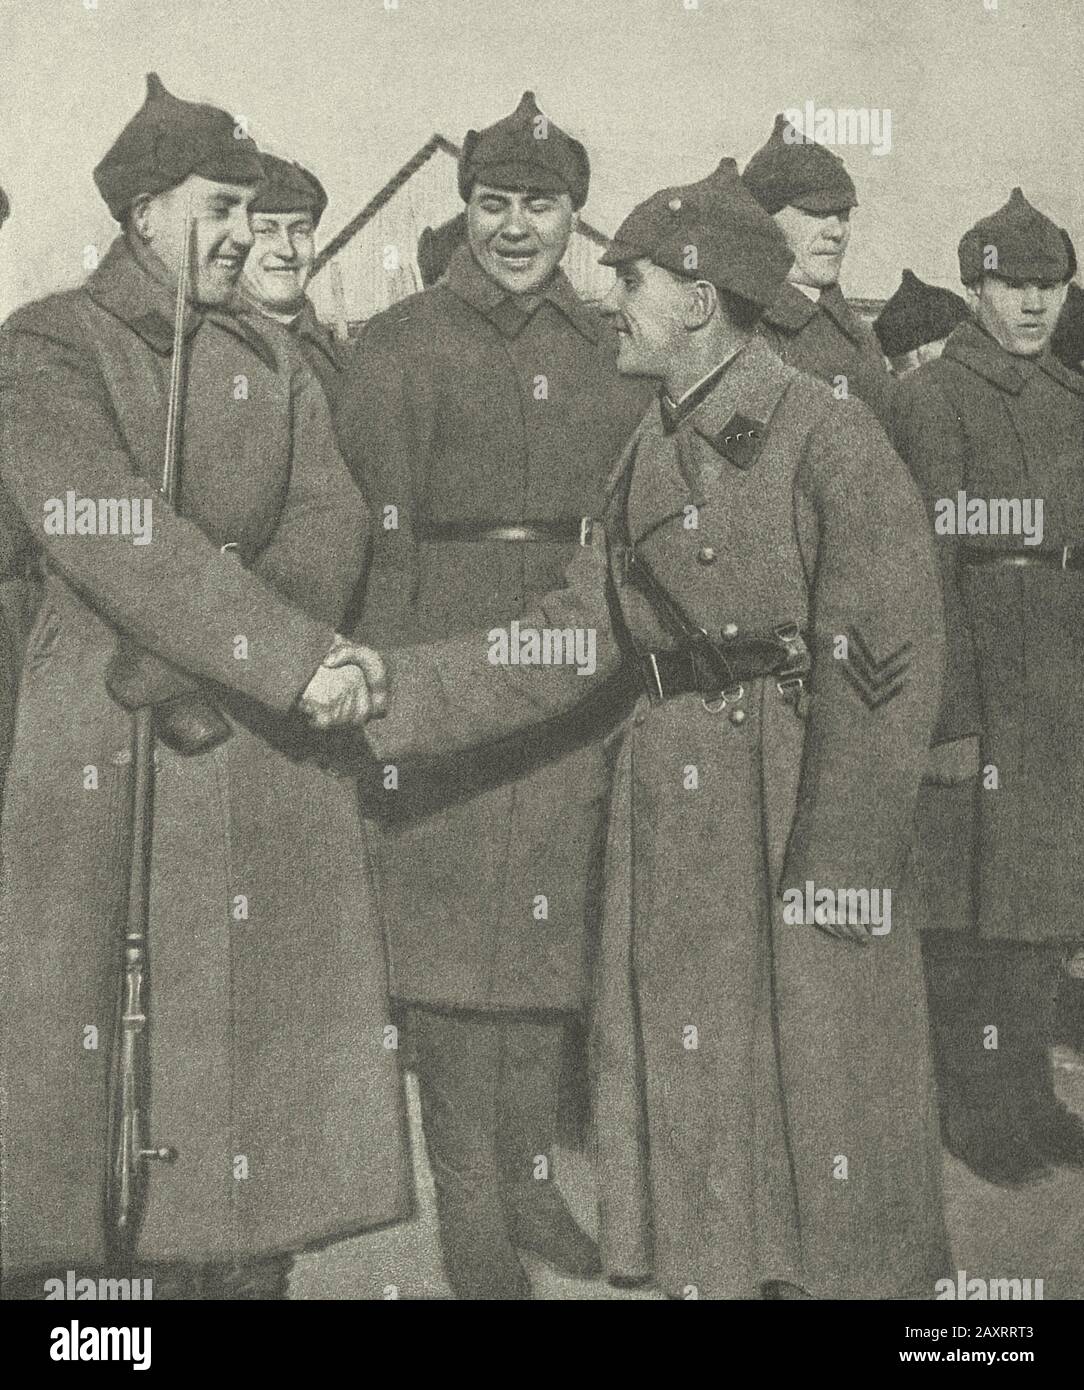 Rote Armee in den 1930er Jahren. Aus dem sowjetischen Propagandabuch von 1937. Sowjetischen Grenzschutz. Ein neuer Wechsel von Heros. Stockfoto